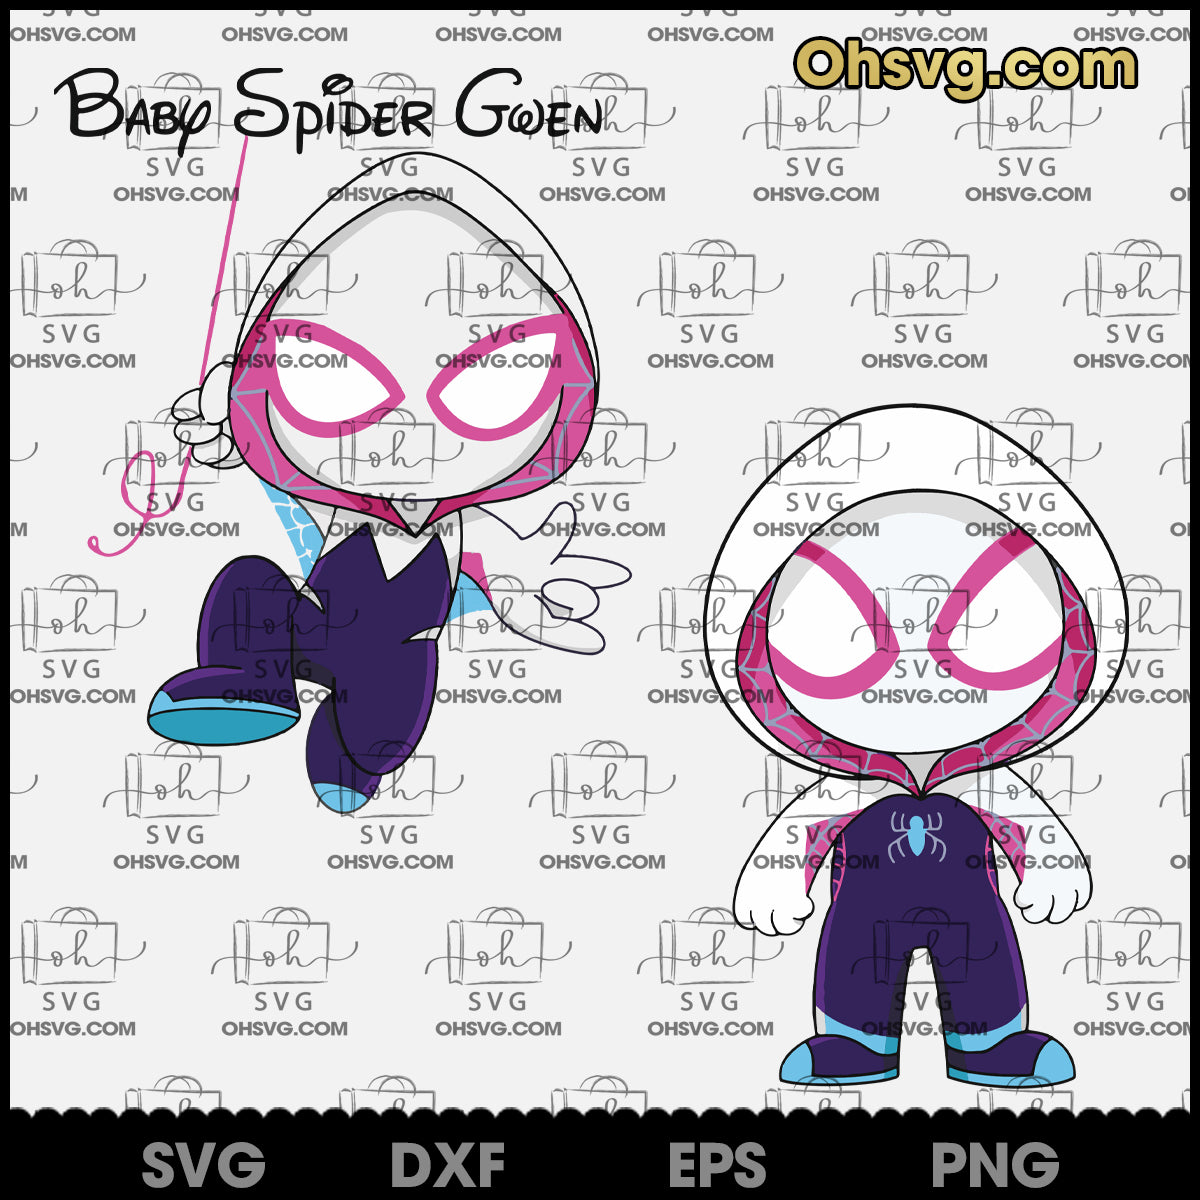 SVG Baby Spider, Gwen SVG, Spidey Girl Superhero SVG, Spiderwomen SVG, White Spiderman SVG